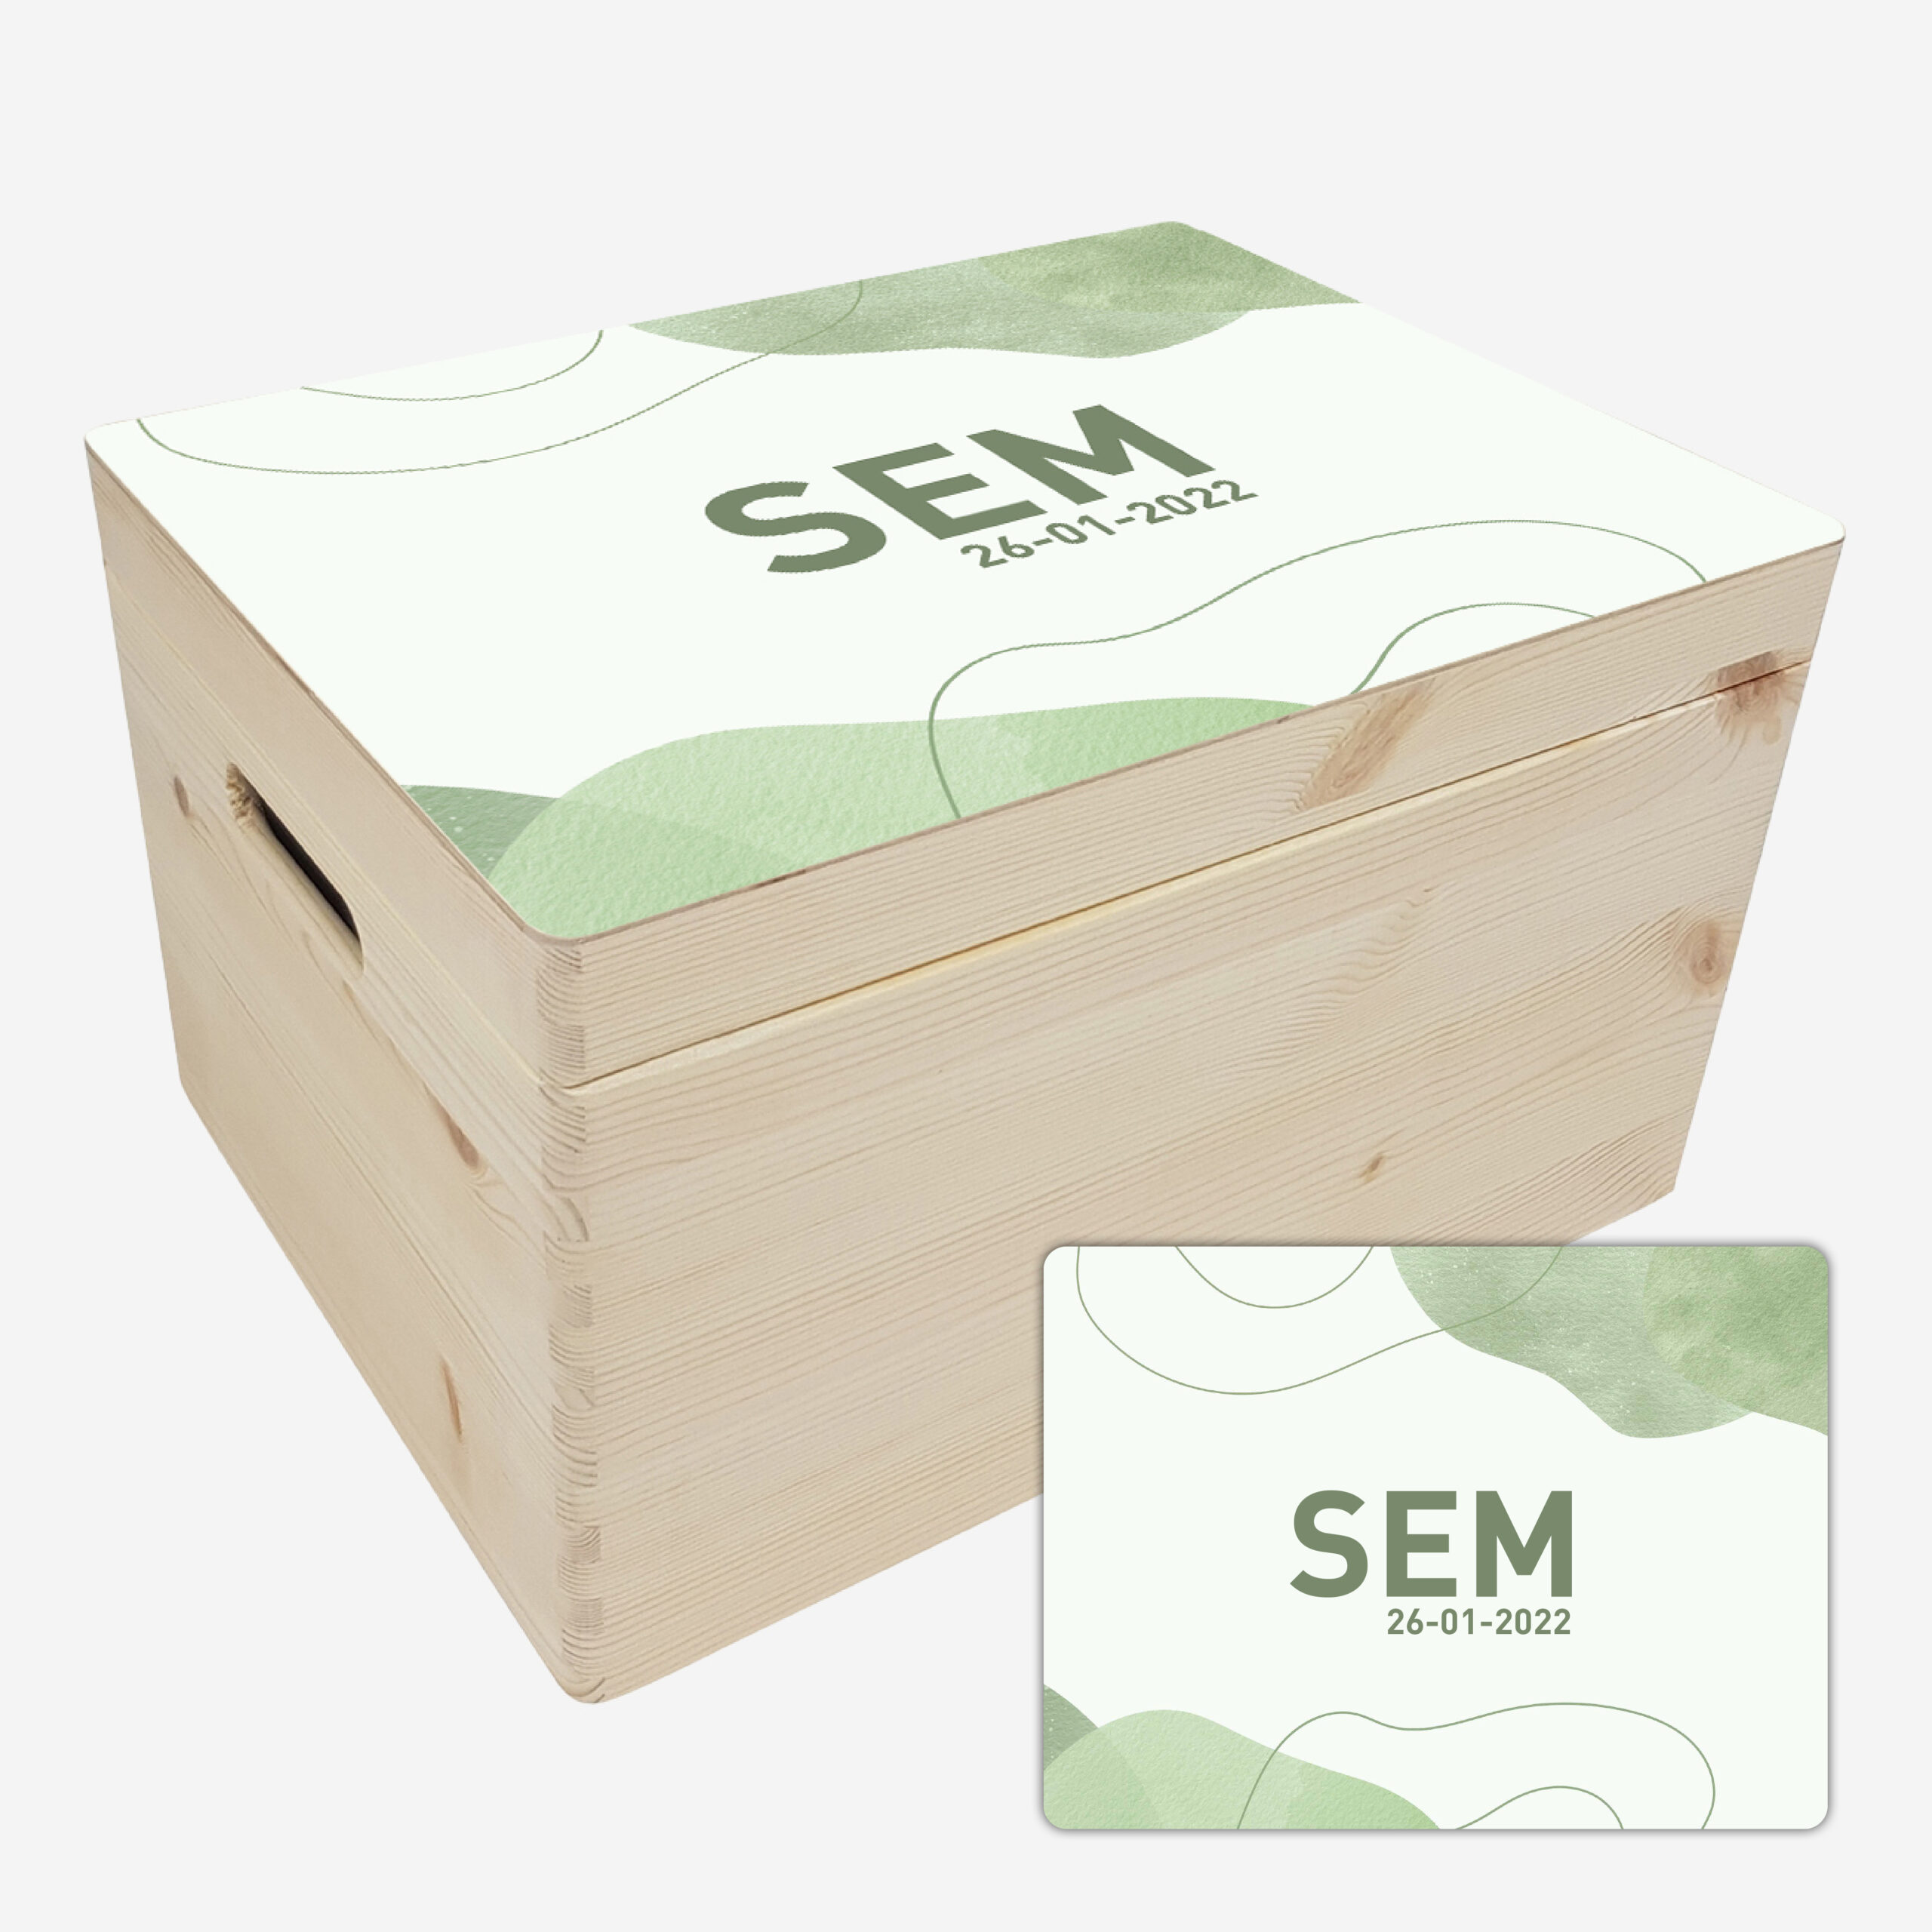 Blanke box middel met voorbeeld aqua groen scaled